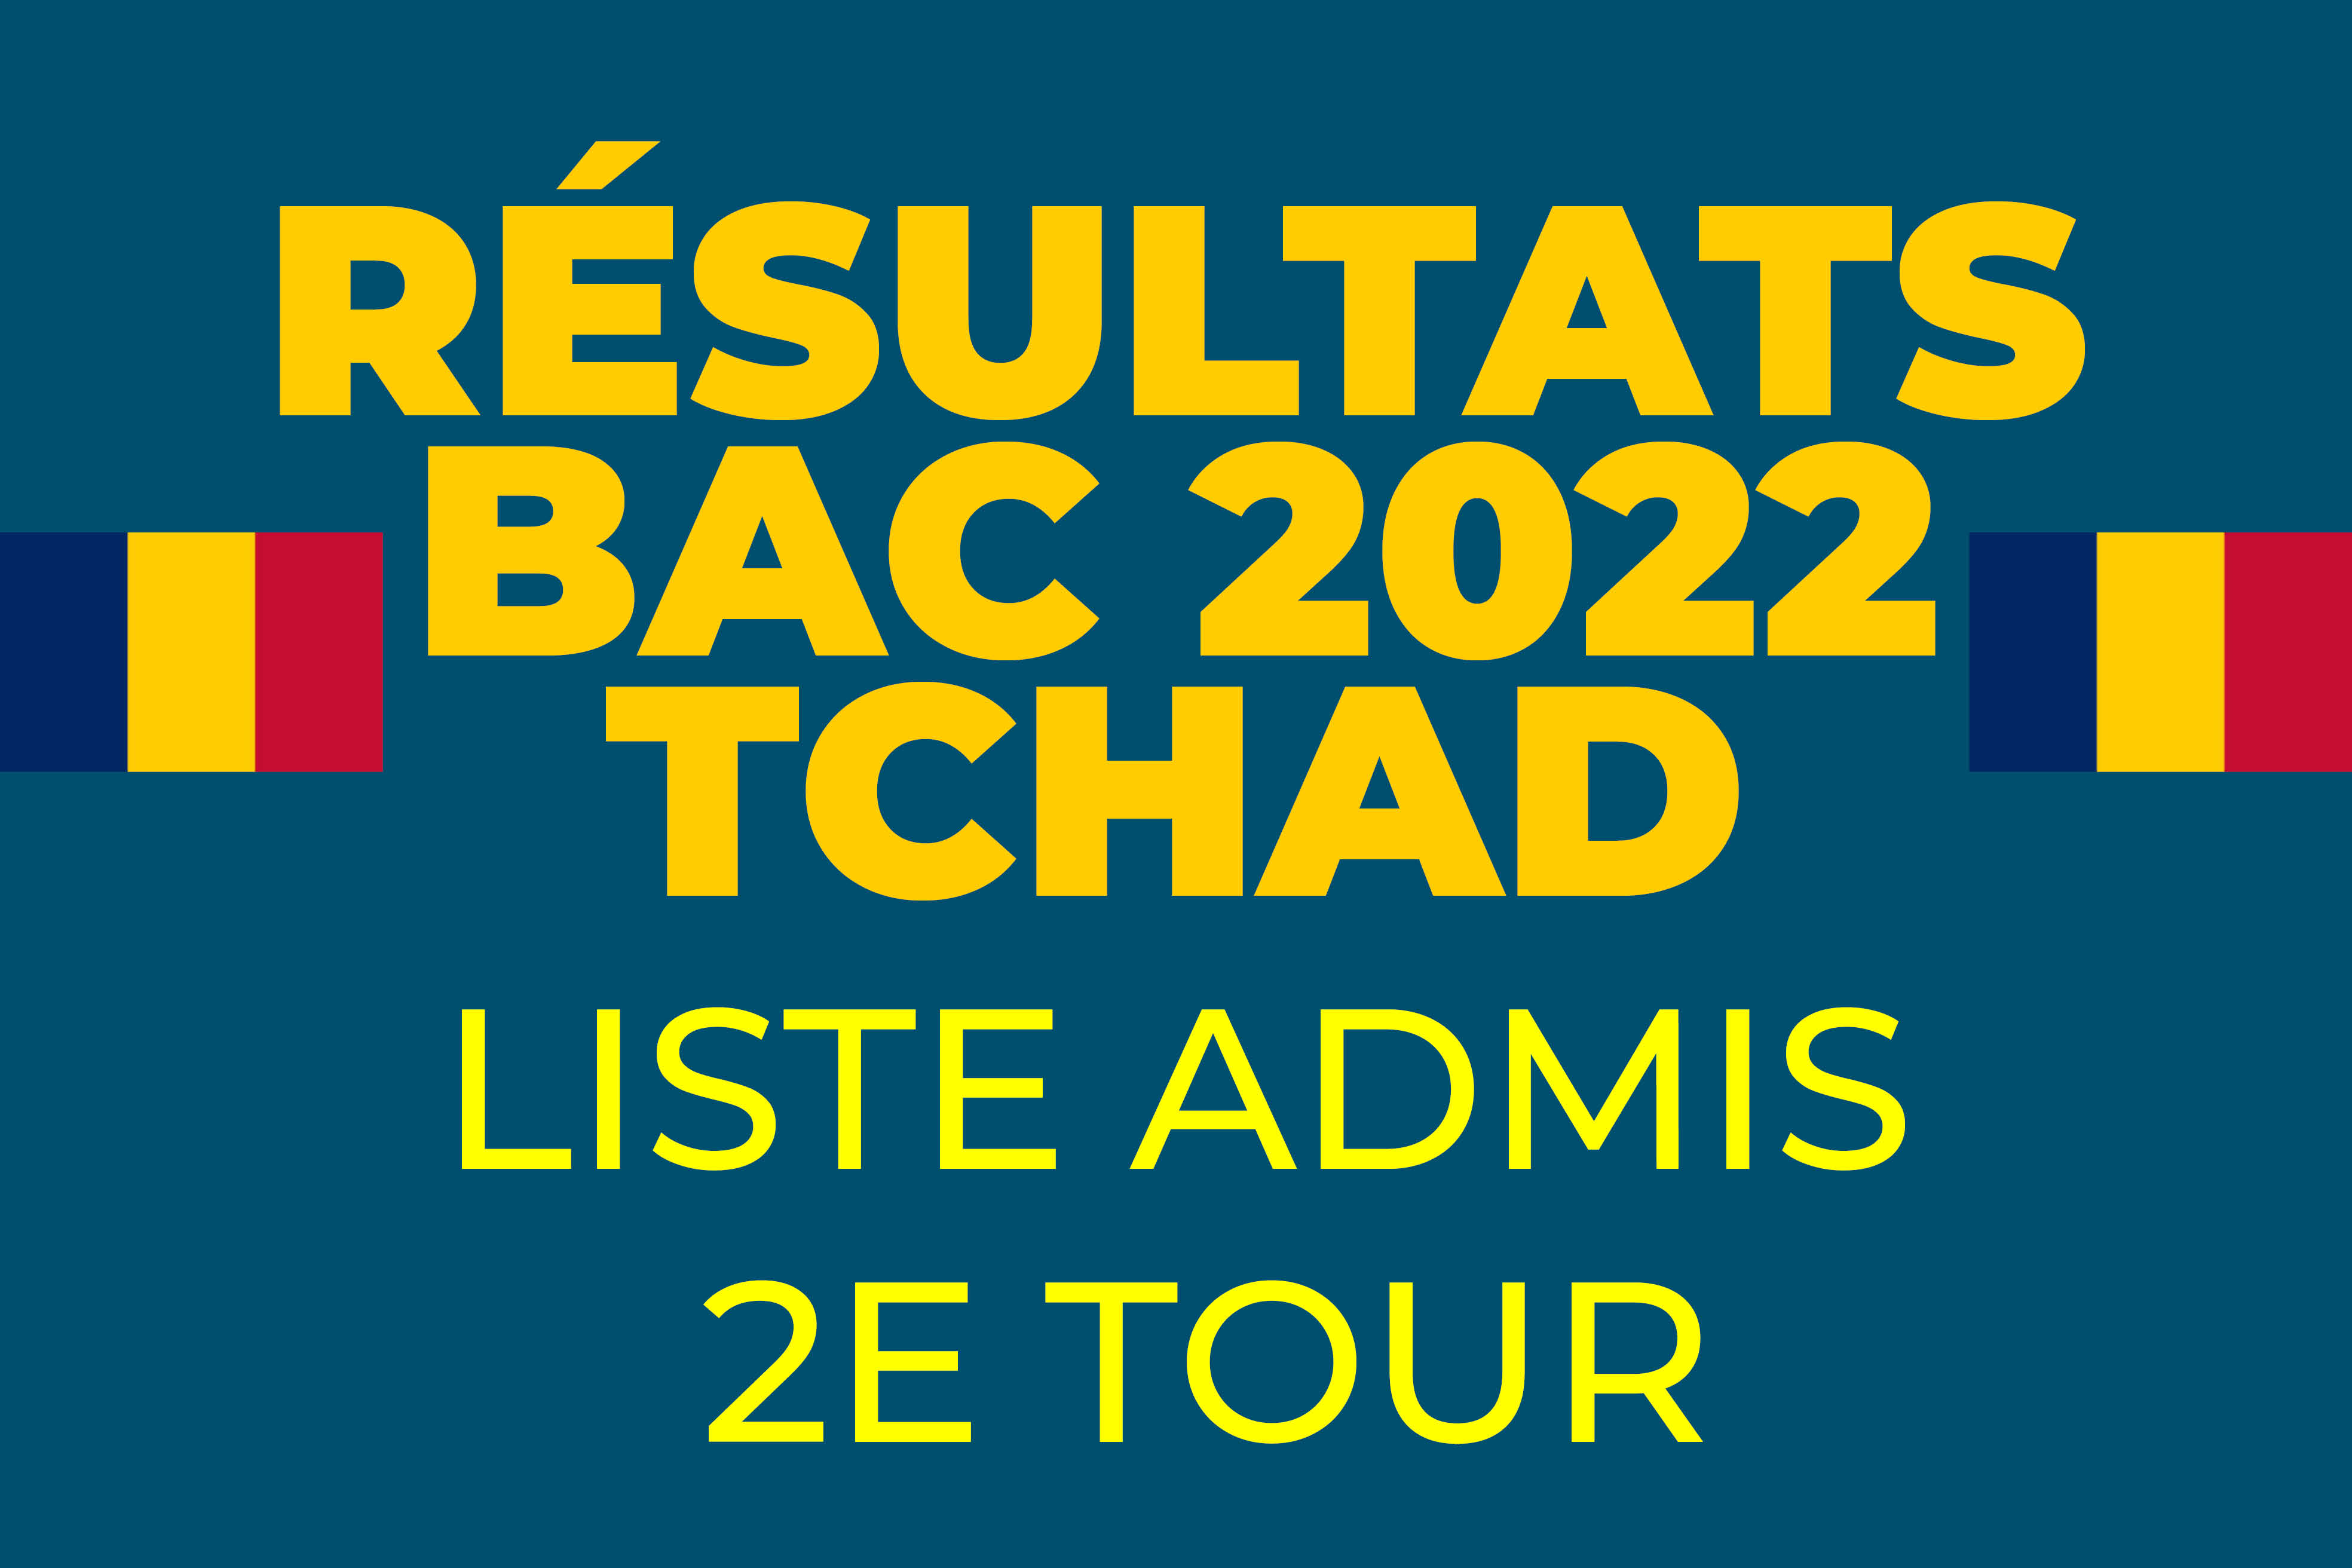 Liste Admis 2e Tour Résultats BAC 2022 TCHAD